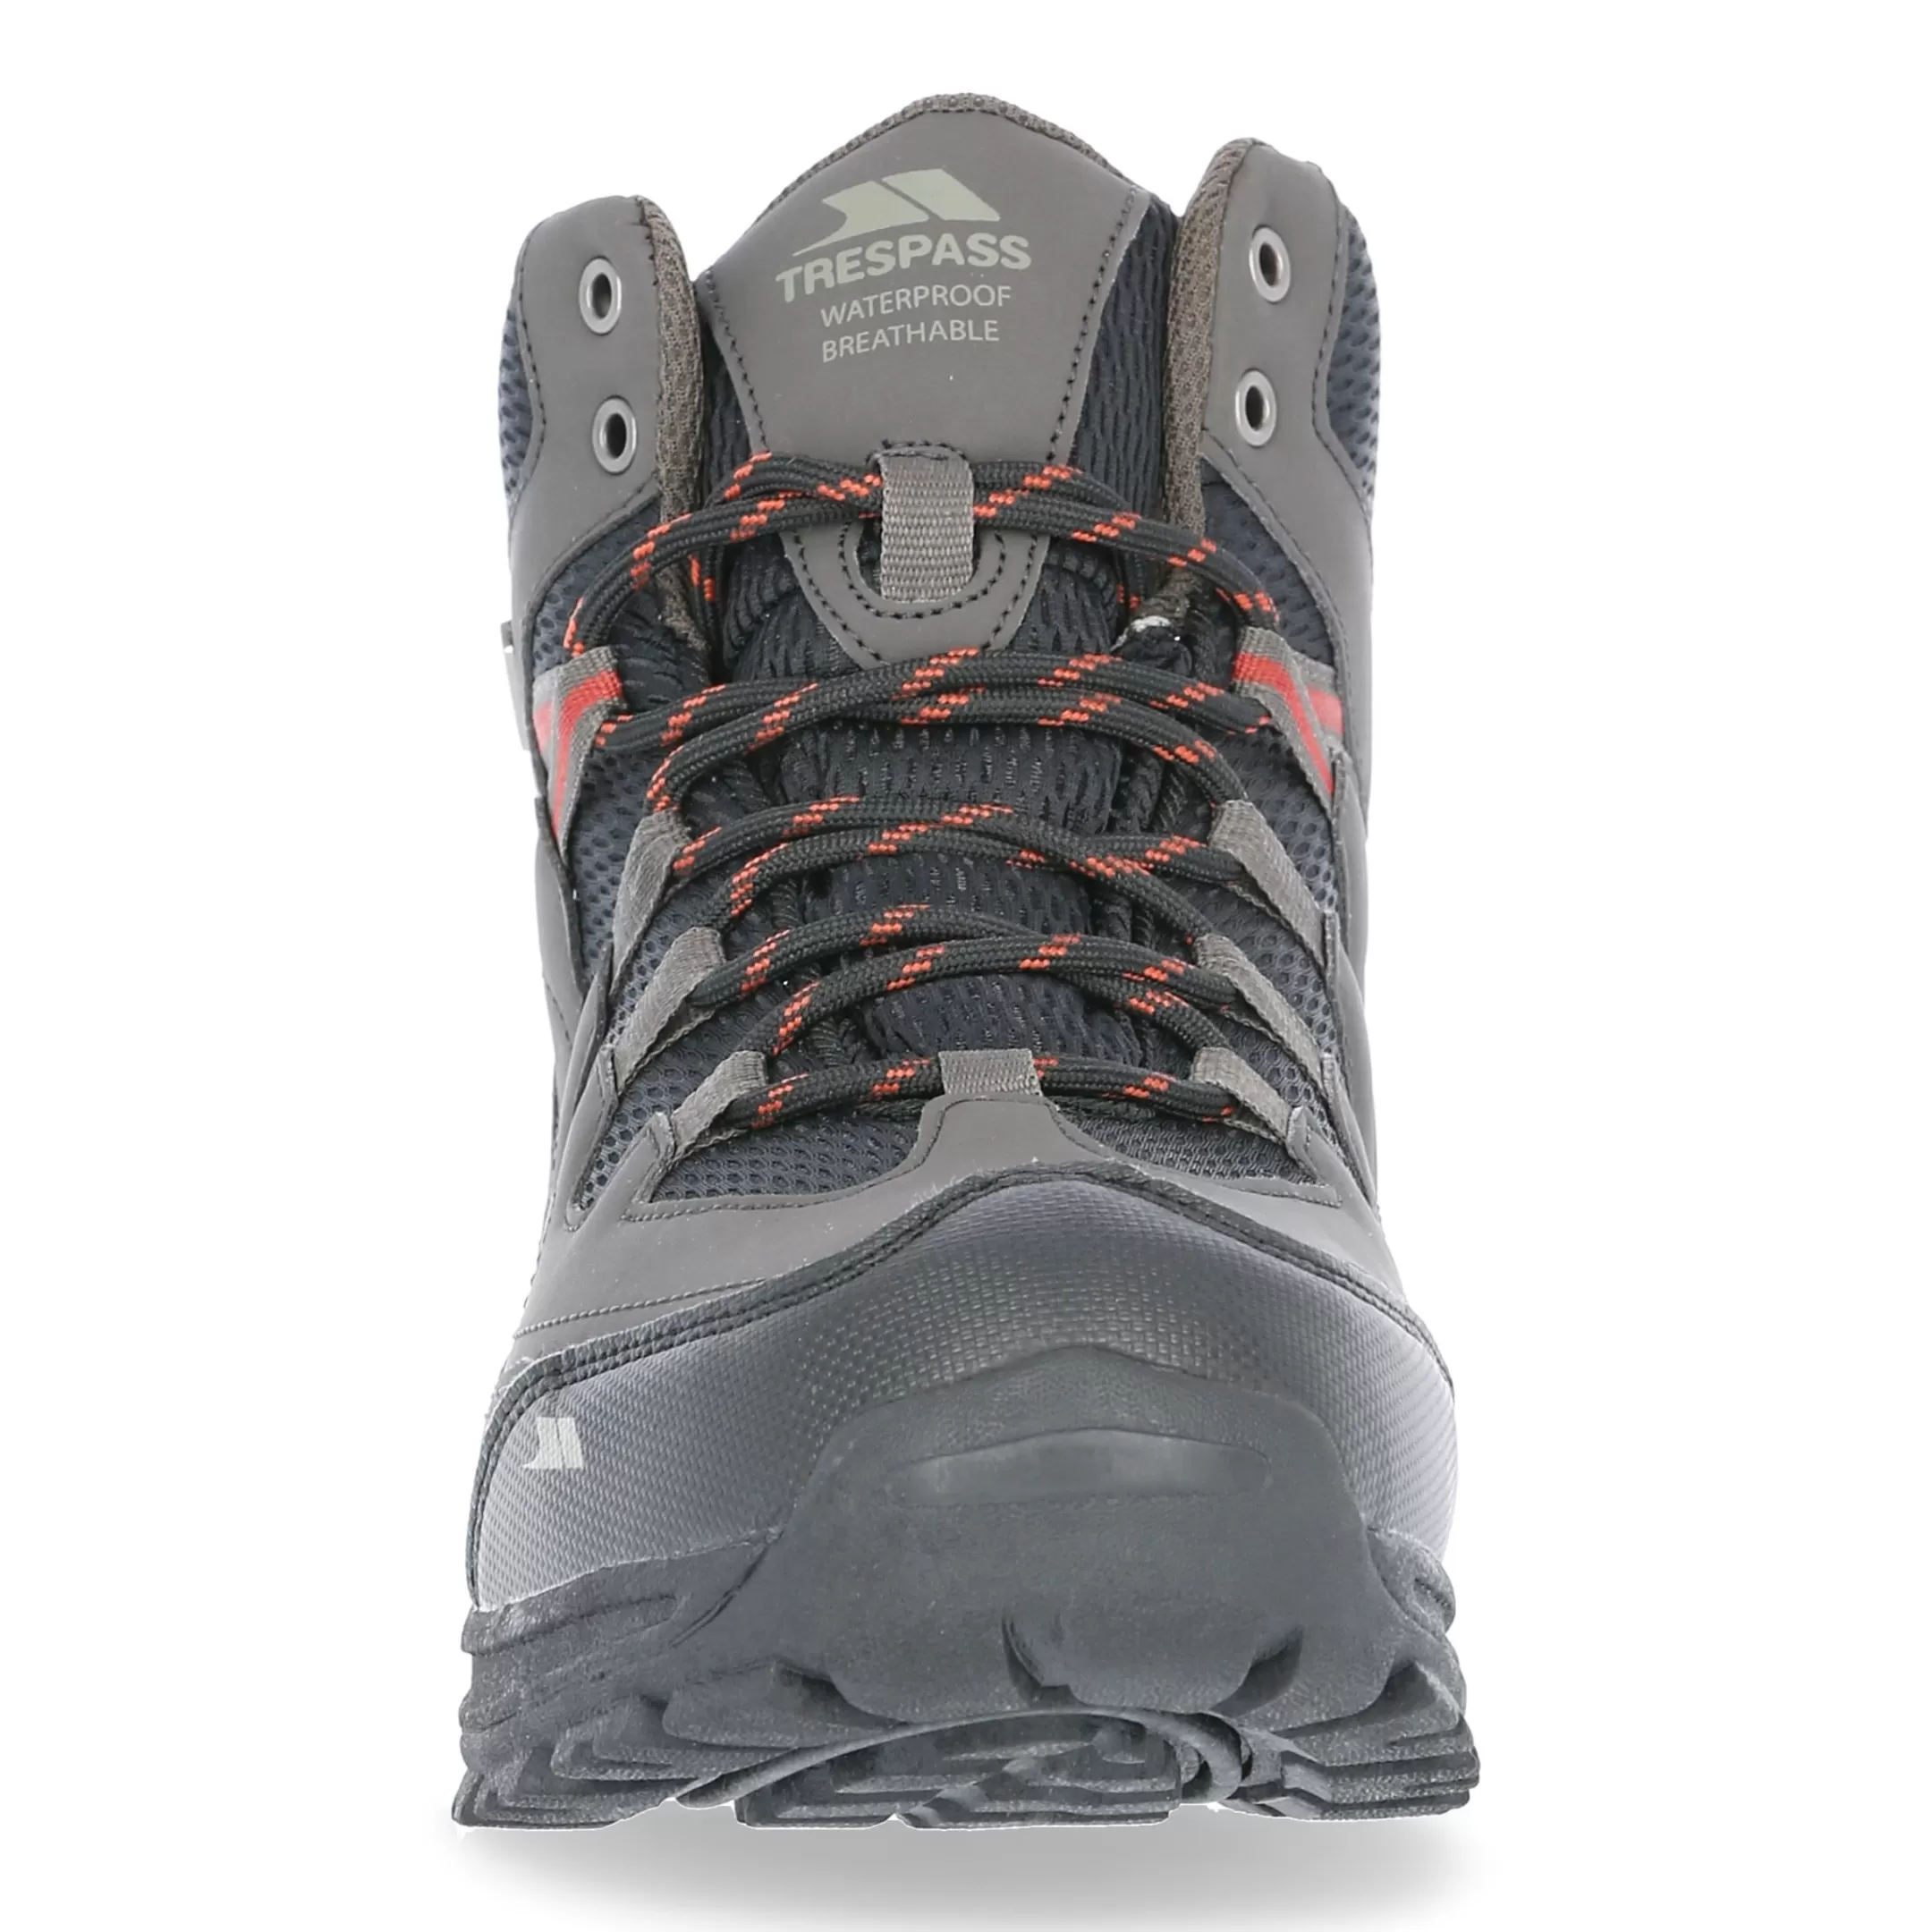 Men's Finley Mid Waterproof Hiking Boots | Trespass Online